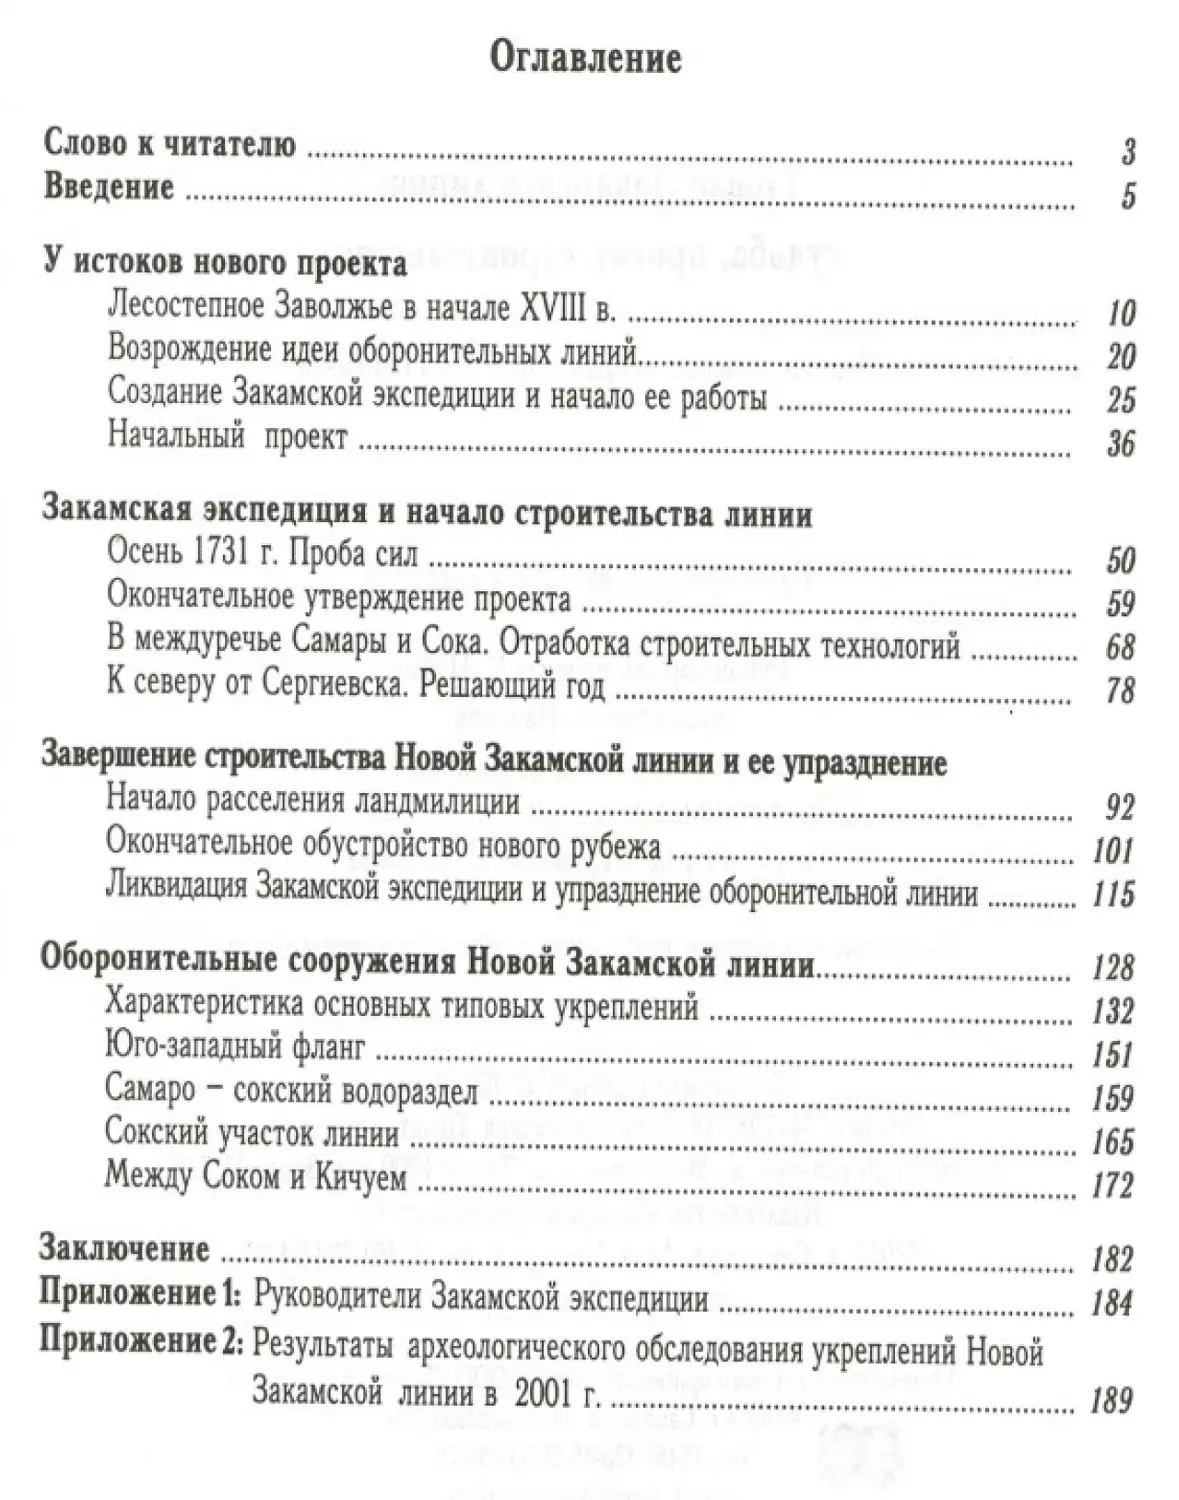 Вал0197.pdf (p.196)